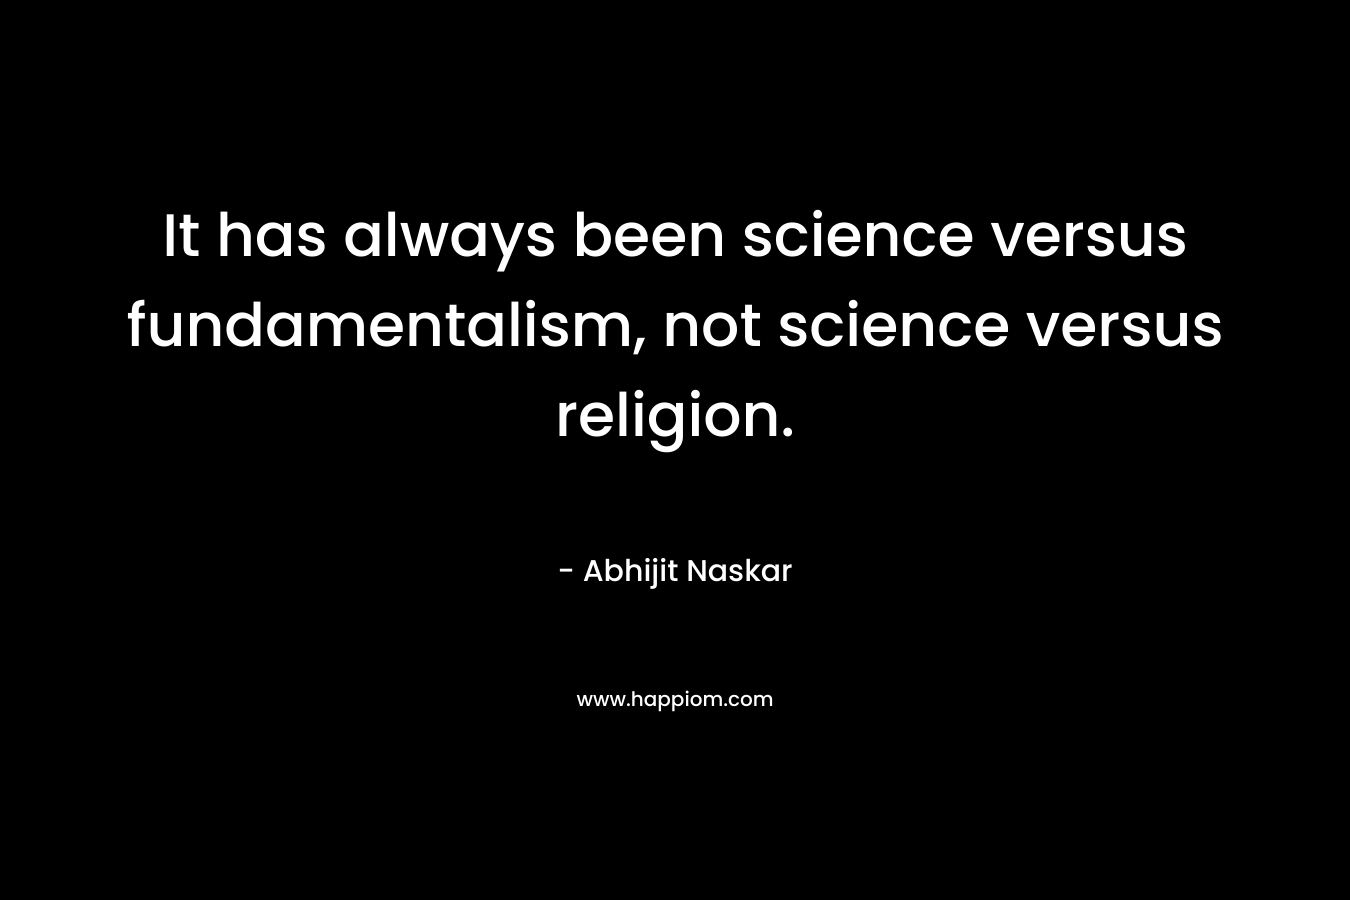 It has always been science versus fundamentalism, not science versus religion.